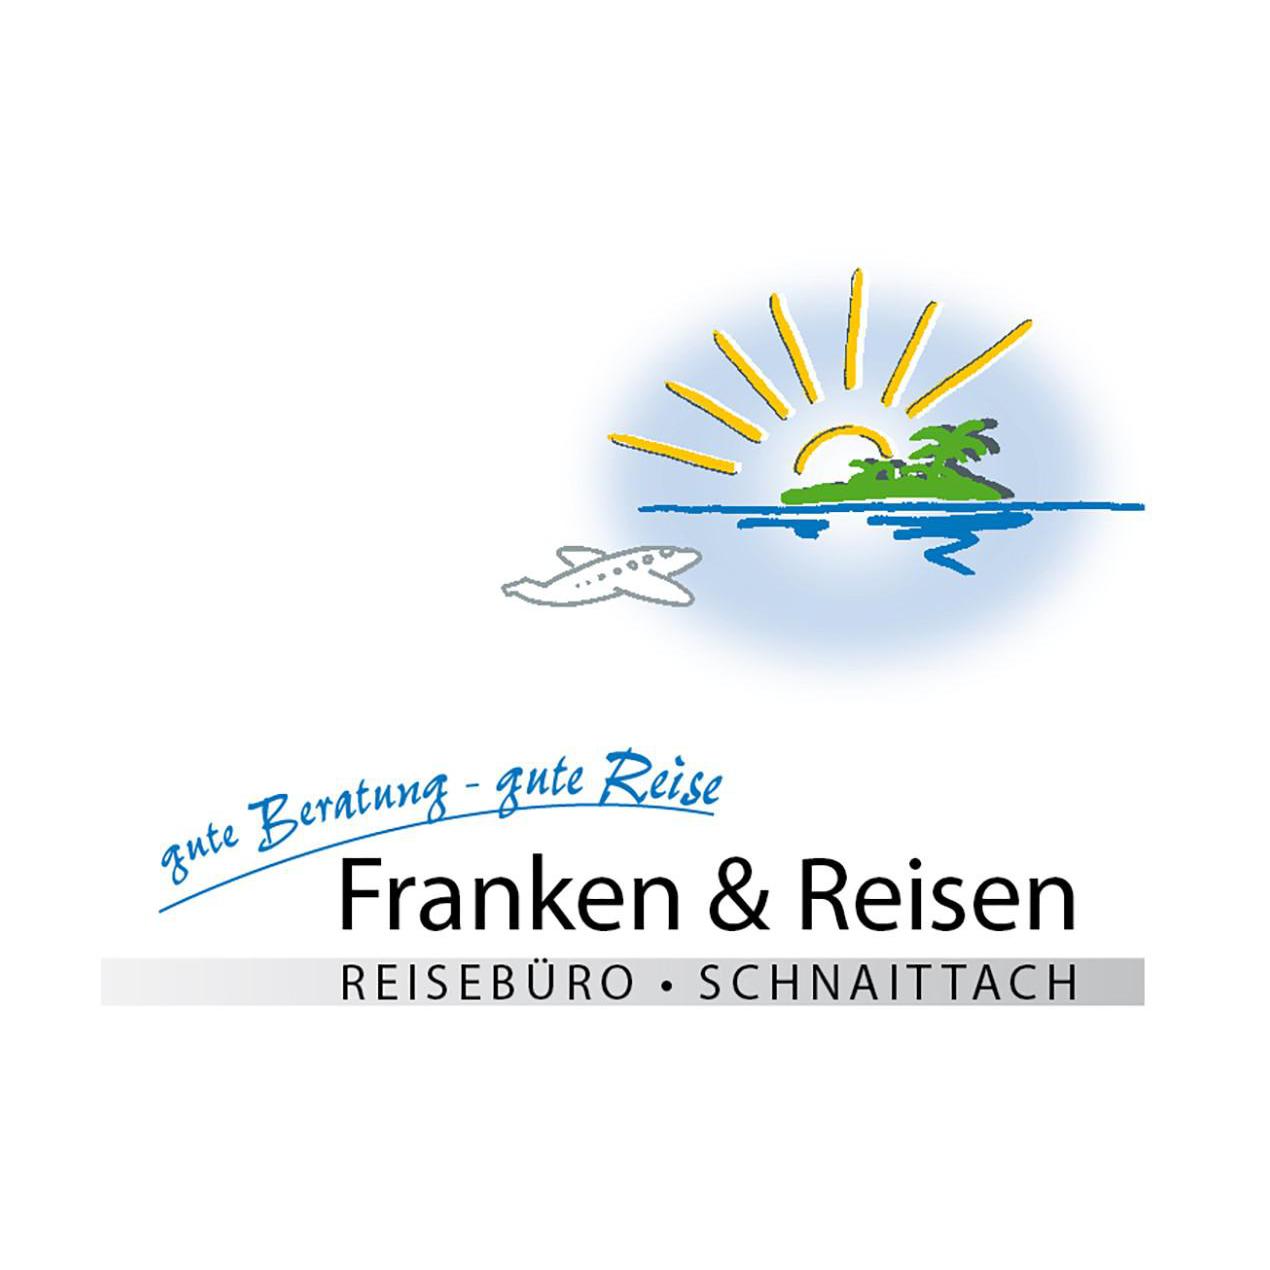 Reisebüro Franken & Reisen Inh. Antonia Koenen in Schnaittach - Logo